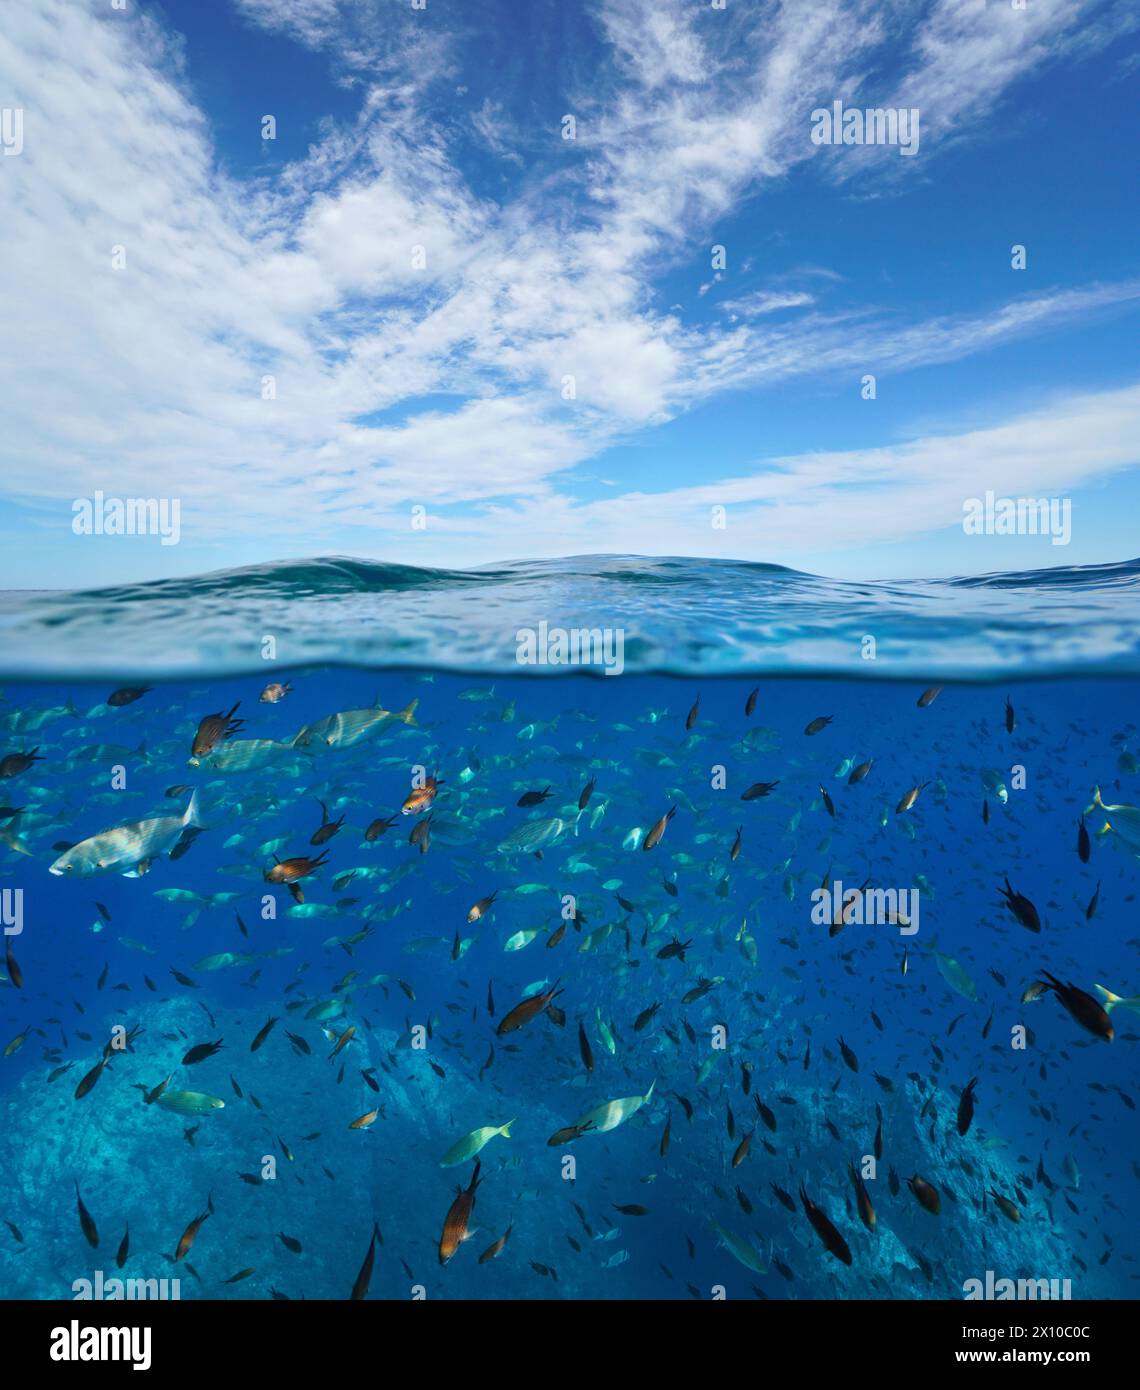 Haut-fond de poissons sous l'eau et ciel bleu avec nuage, paysage marin dans la mer Méditerranée, vue divisée sur et sous la surface de l'eau, scène naturelle, France Banque D'Images